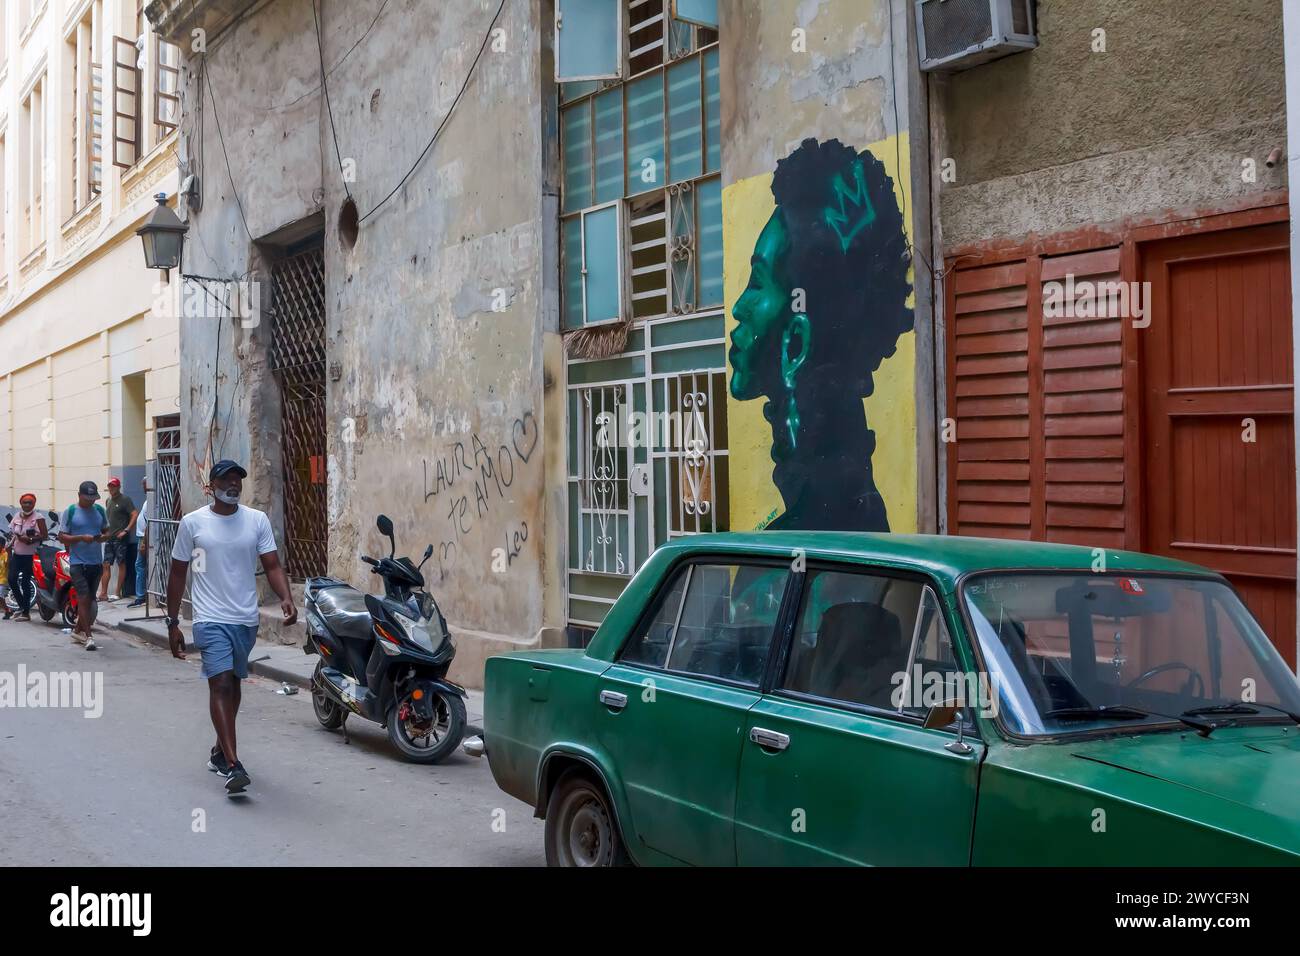 Cuban people and car by a painting graffiti art in Havana, Cuba Stock Photo